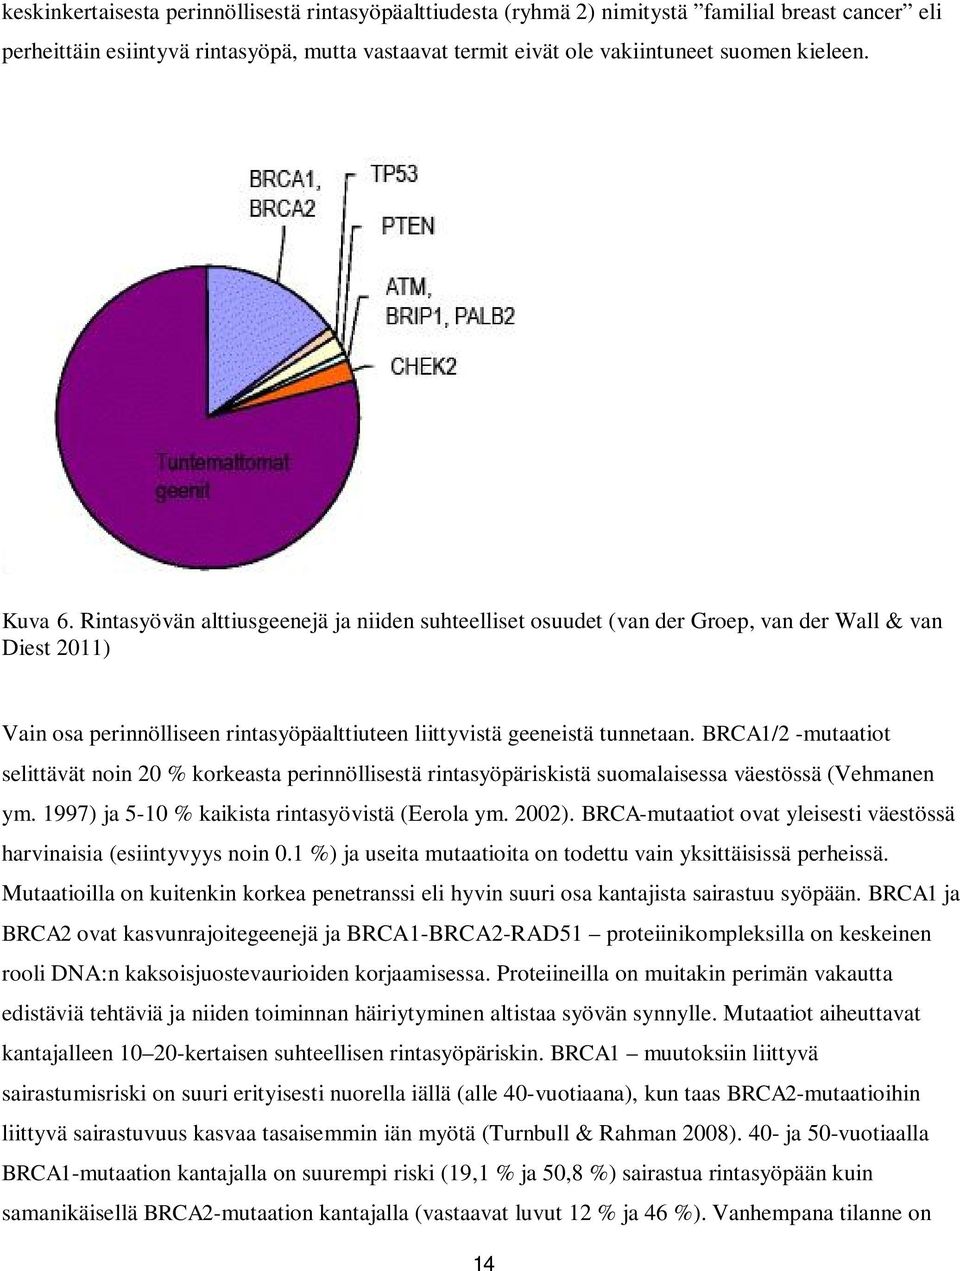 BRCA1/2 -mutaatiot selittävät noin 20 % korkeasta perinnöllisestä rintasyöpäriskistä suomalaisessa väestössä (Vehmanen ym. 1997) ja 5-10 % kaikista rintasyövistä (Eerola ym. 2002).